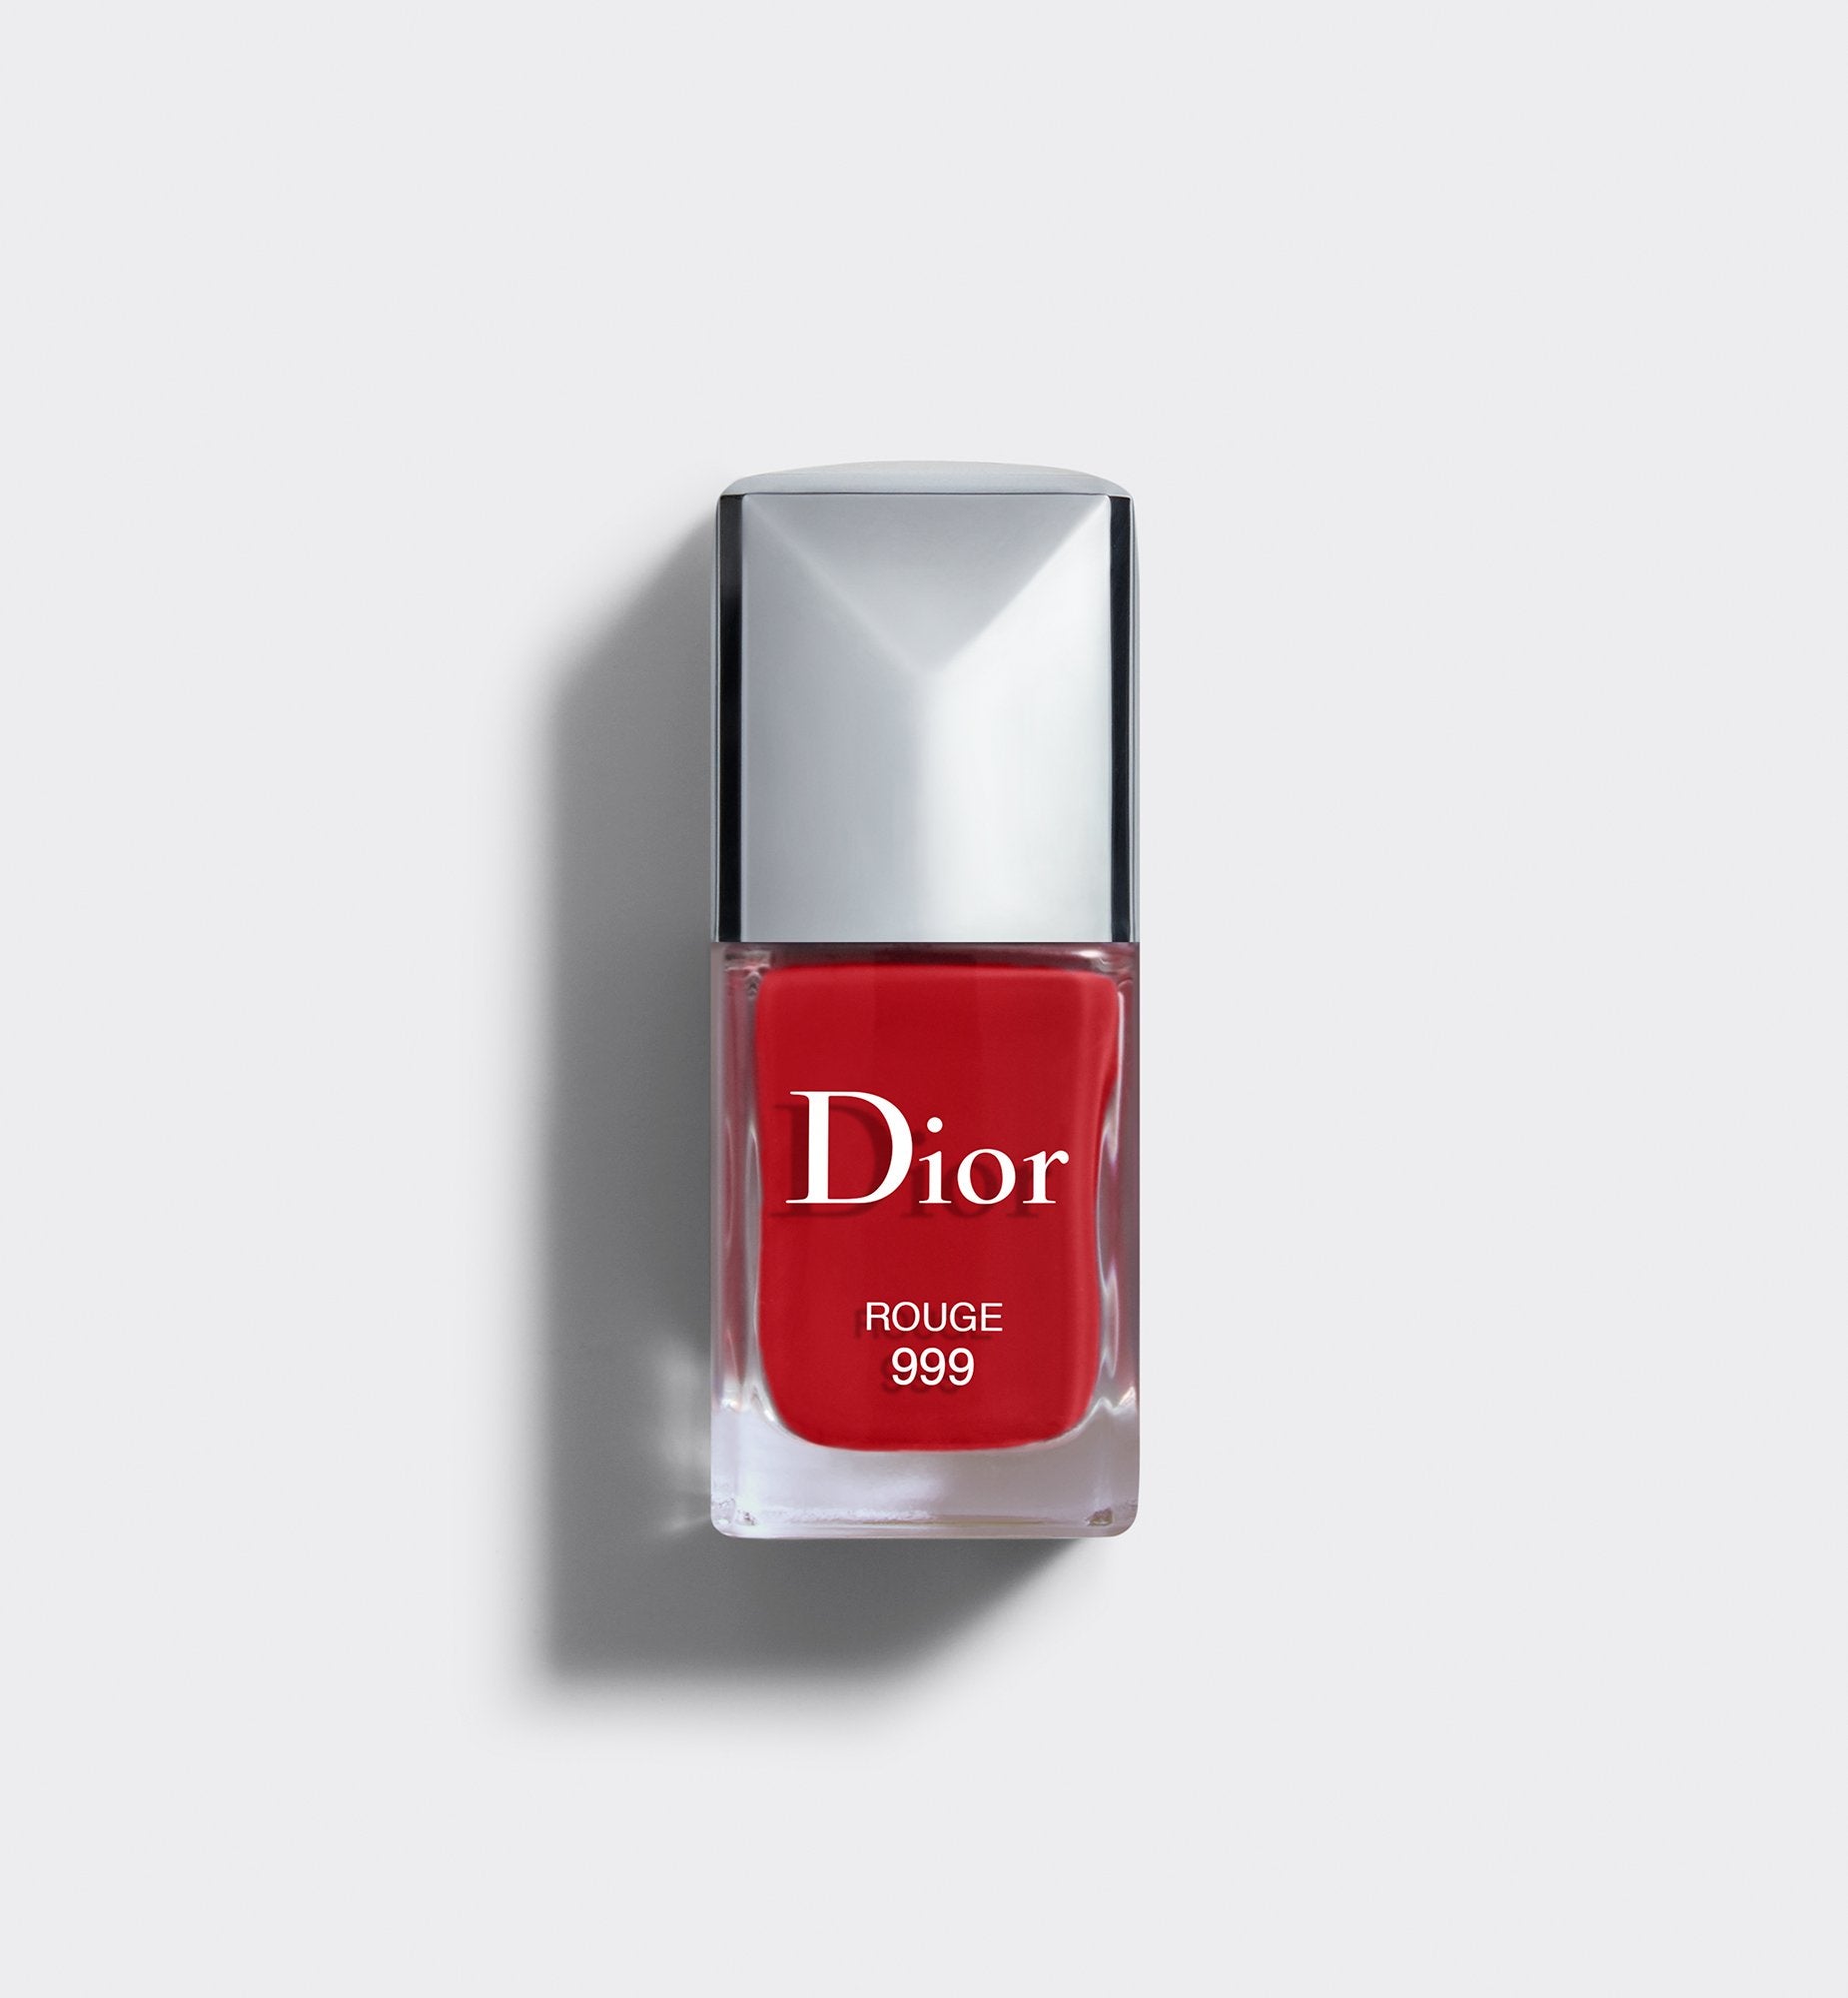 Dior Summer 2014 nail polish, Yacht : Review, photos & swatches | Nail  polish, Dior nail polish, Dior nails